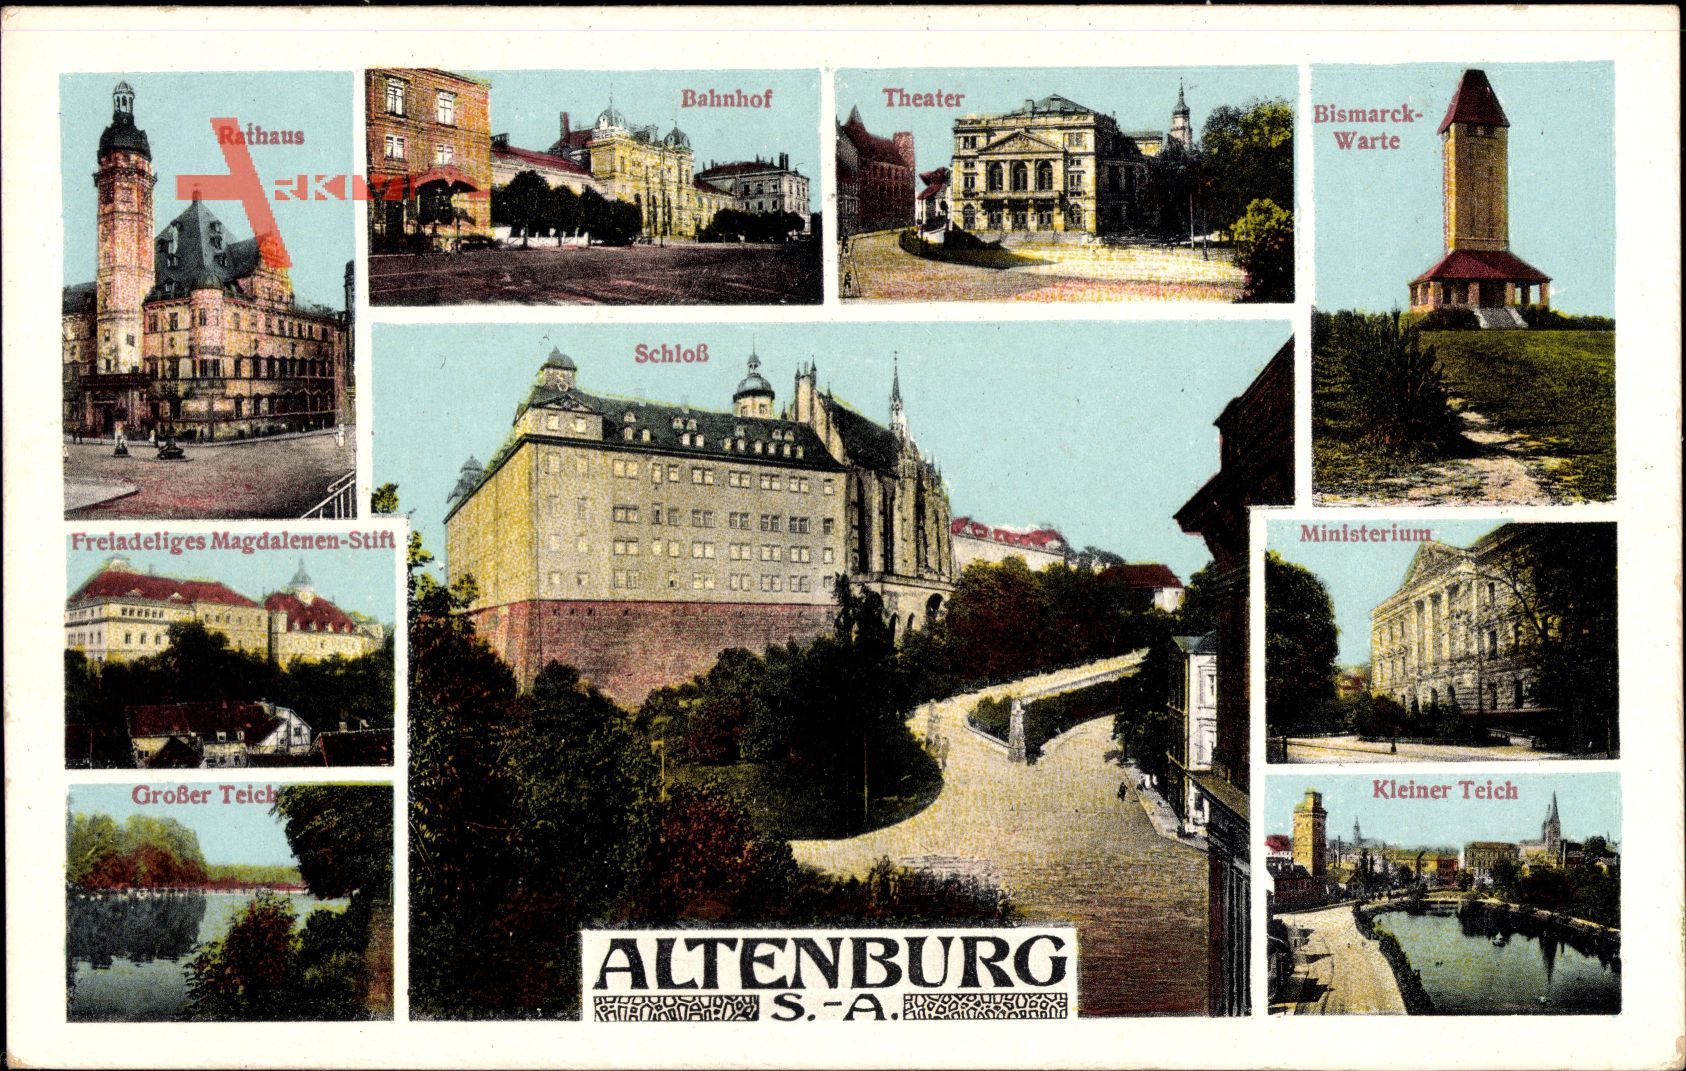 Altenburg Sachsen, Schloß, Bismarckwarte, Rathaus, Theater, Ministerium